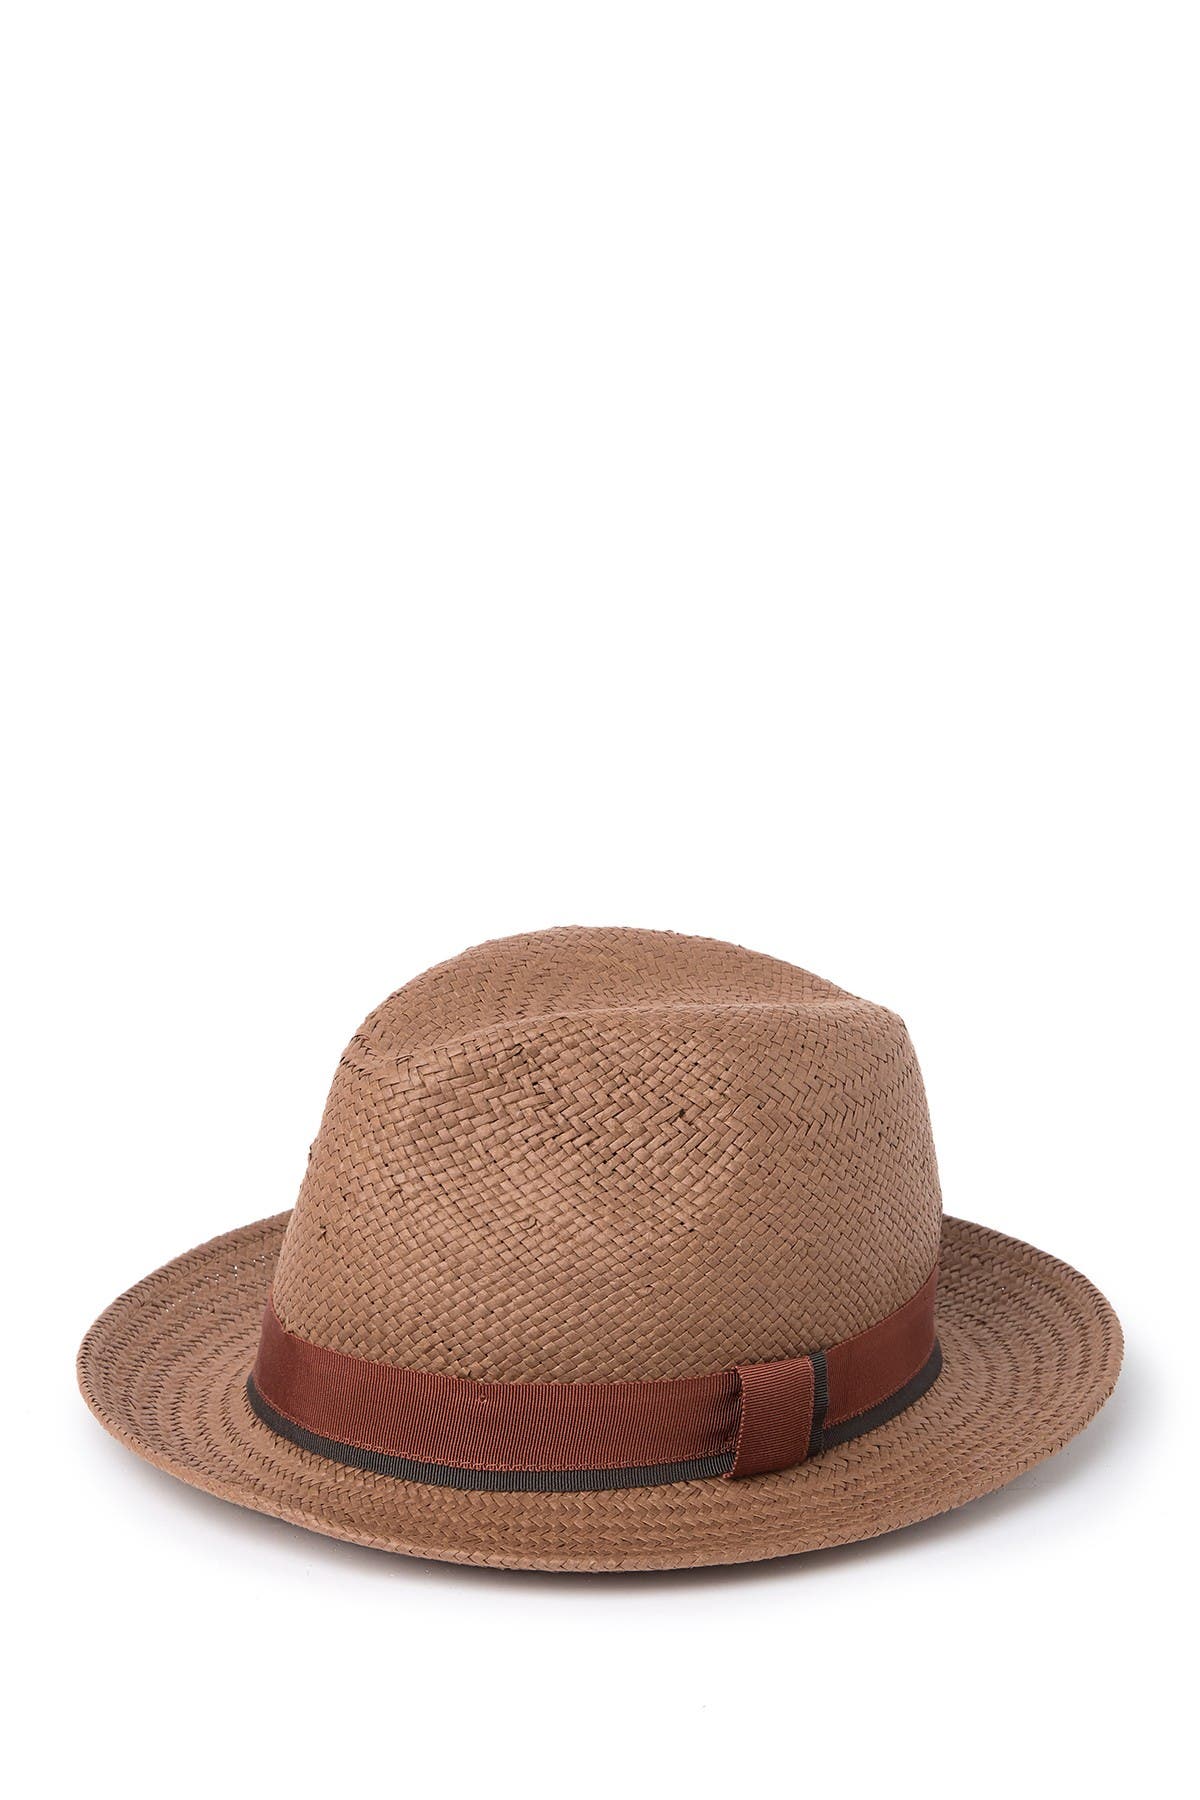 Stewart Of Scotland Woven Straw Fedora Hat In Brown